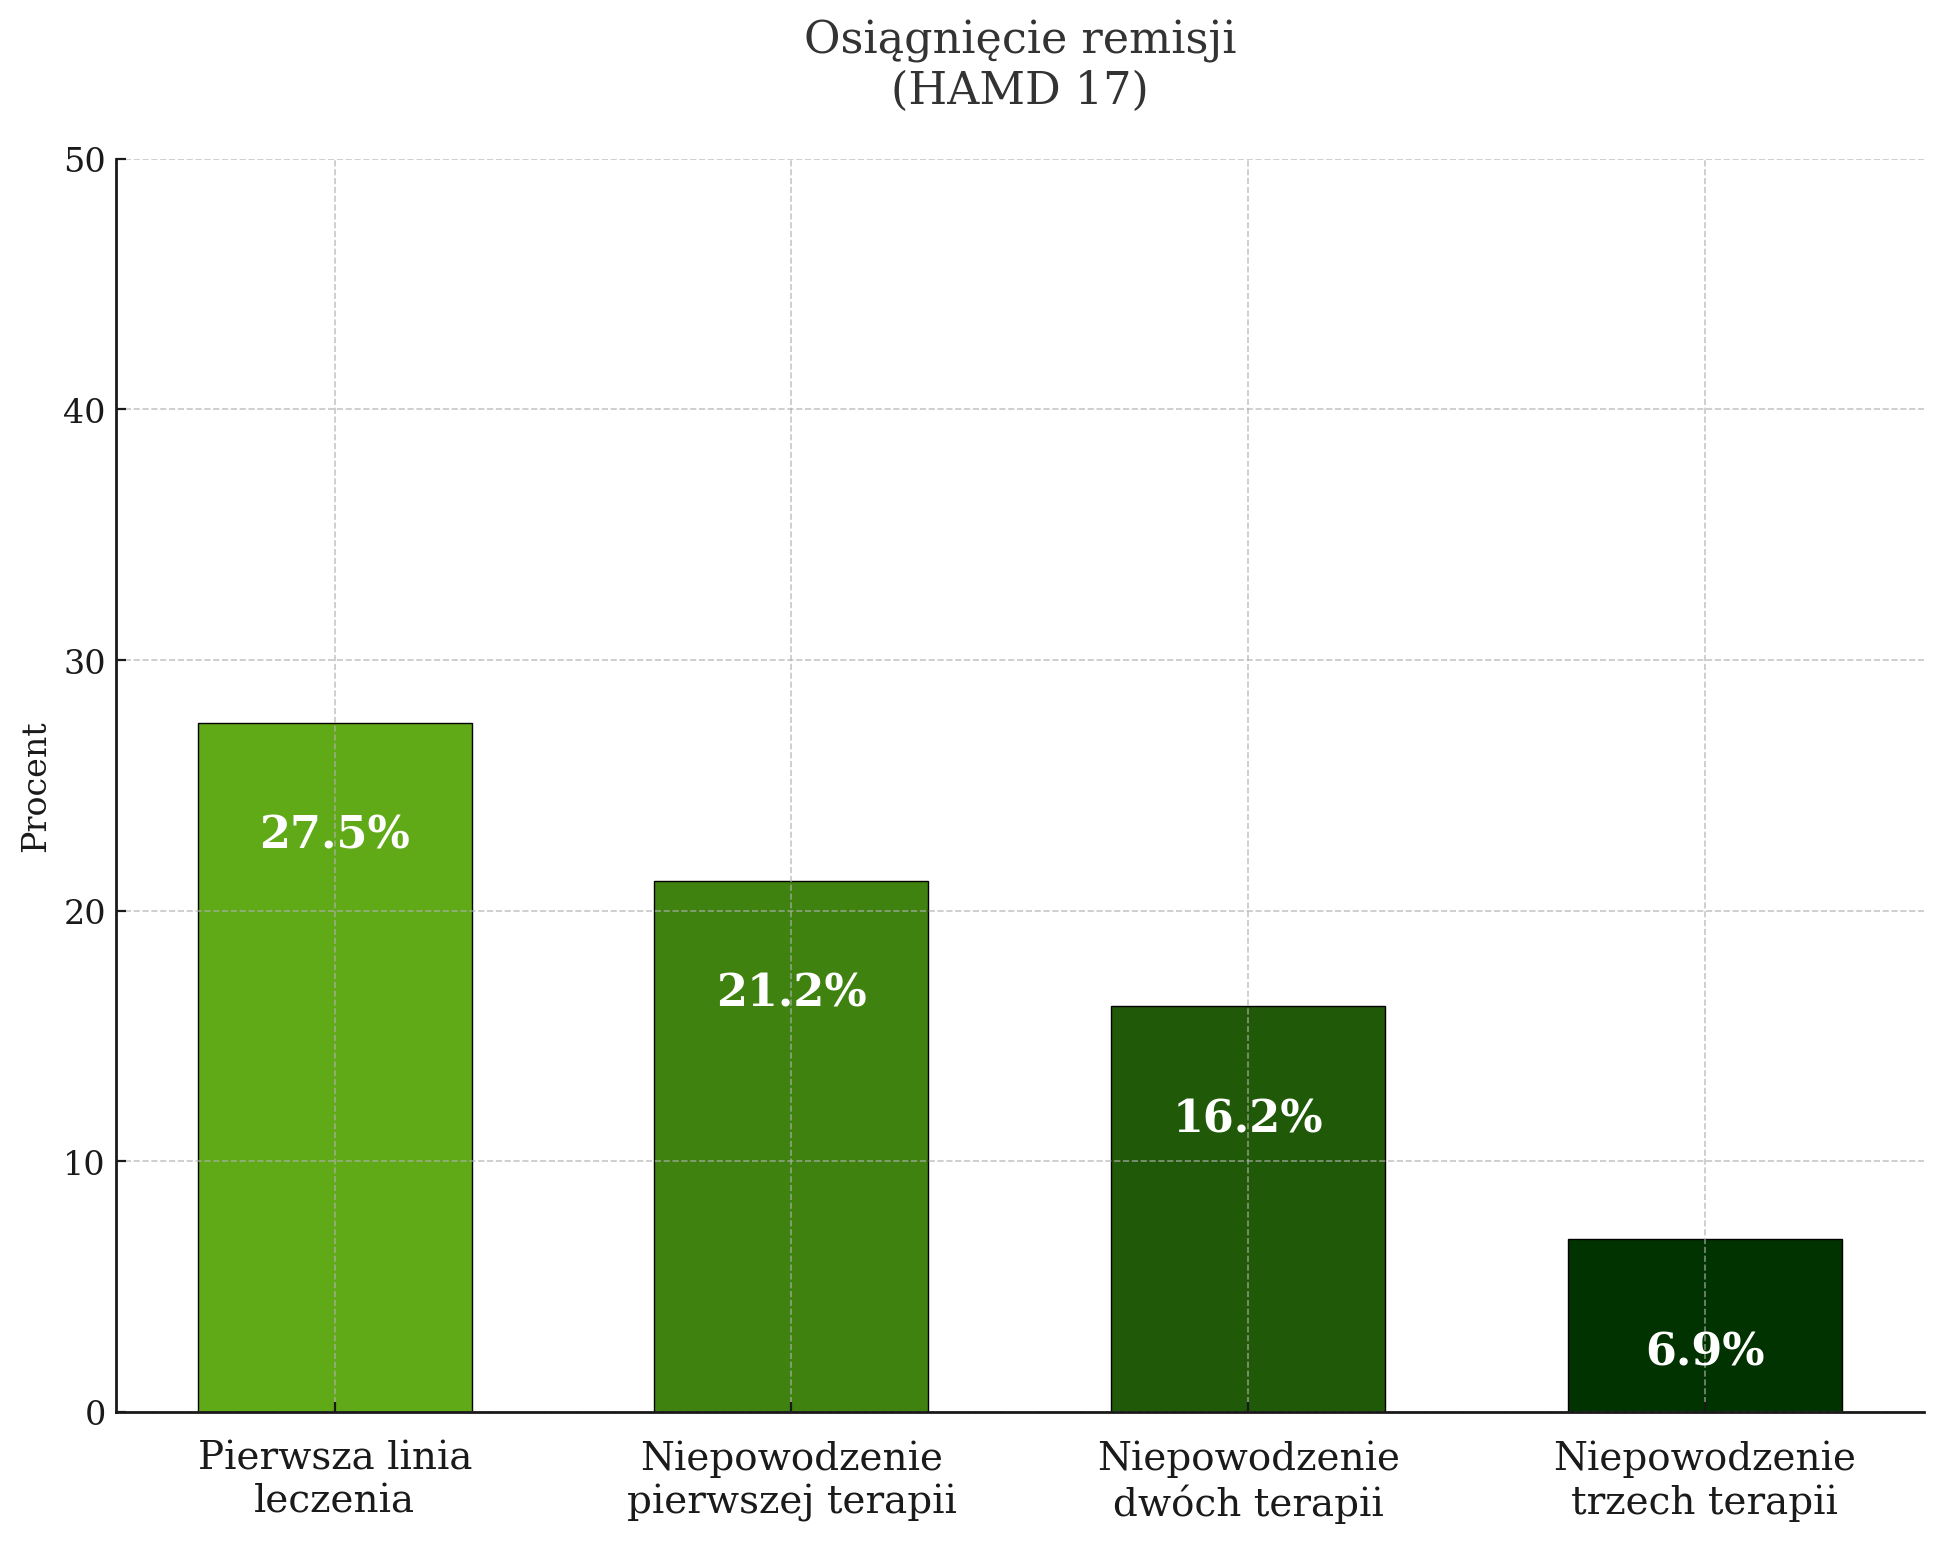 Wykres słupkowy przedstawiający procentową osiągniętą remisję w ramach HAMD 17